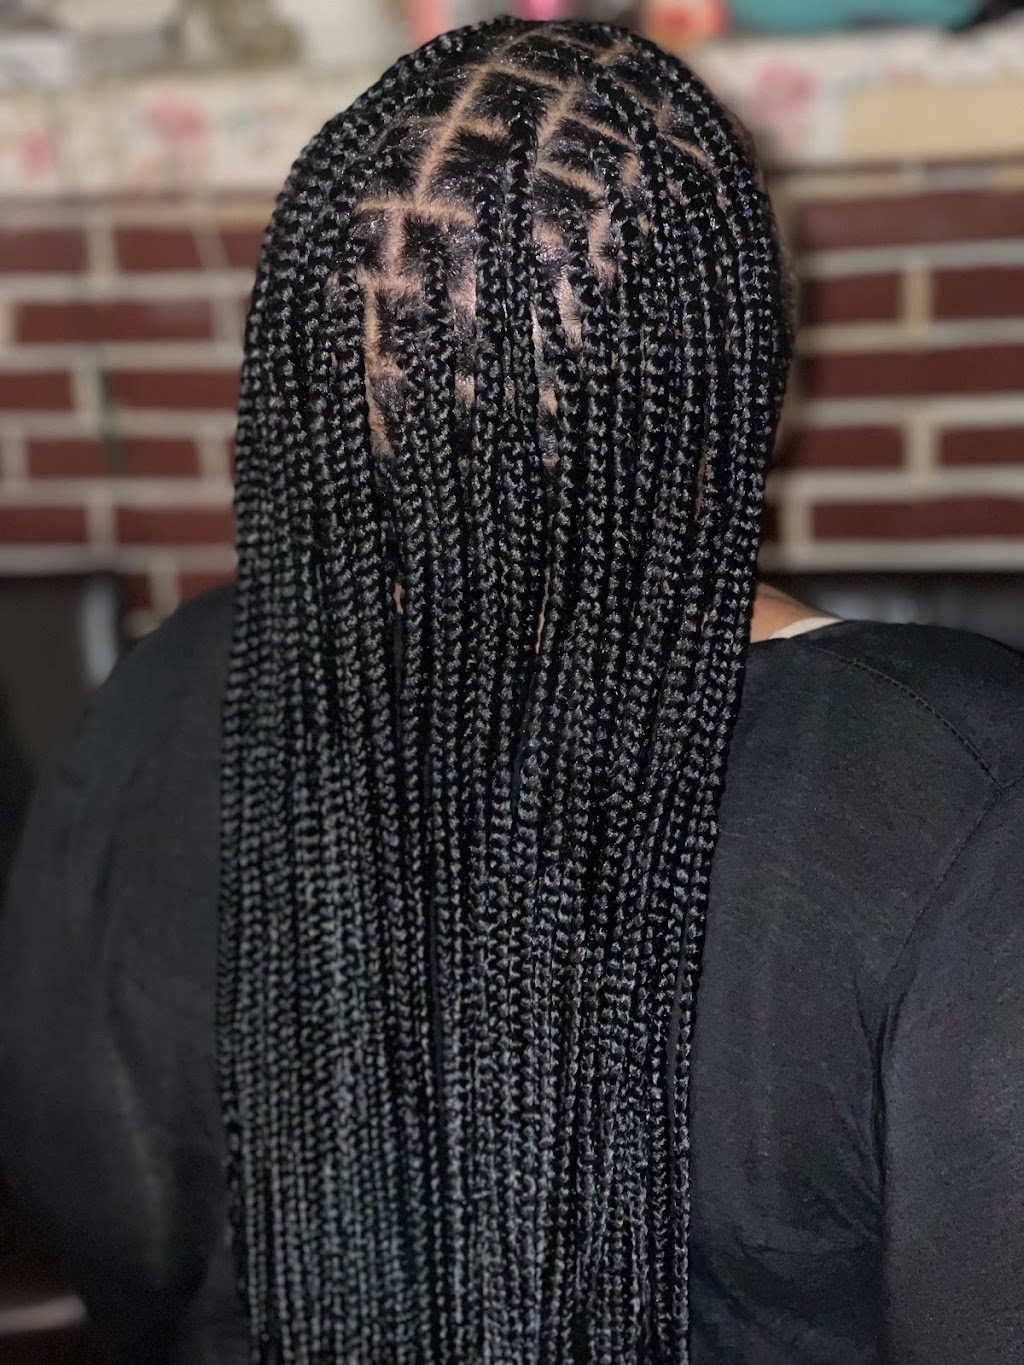 Shana African hair braiding | 1109 Harrison St, Philadelphia, PA 19124 | Phone: (215) 824-9802